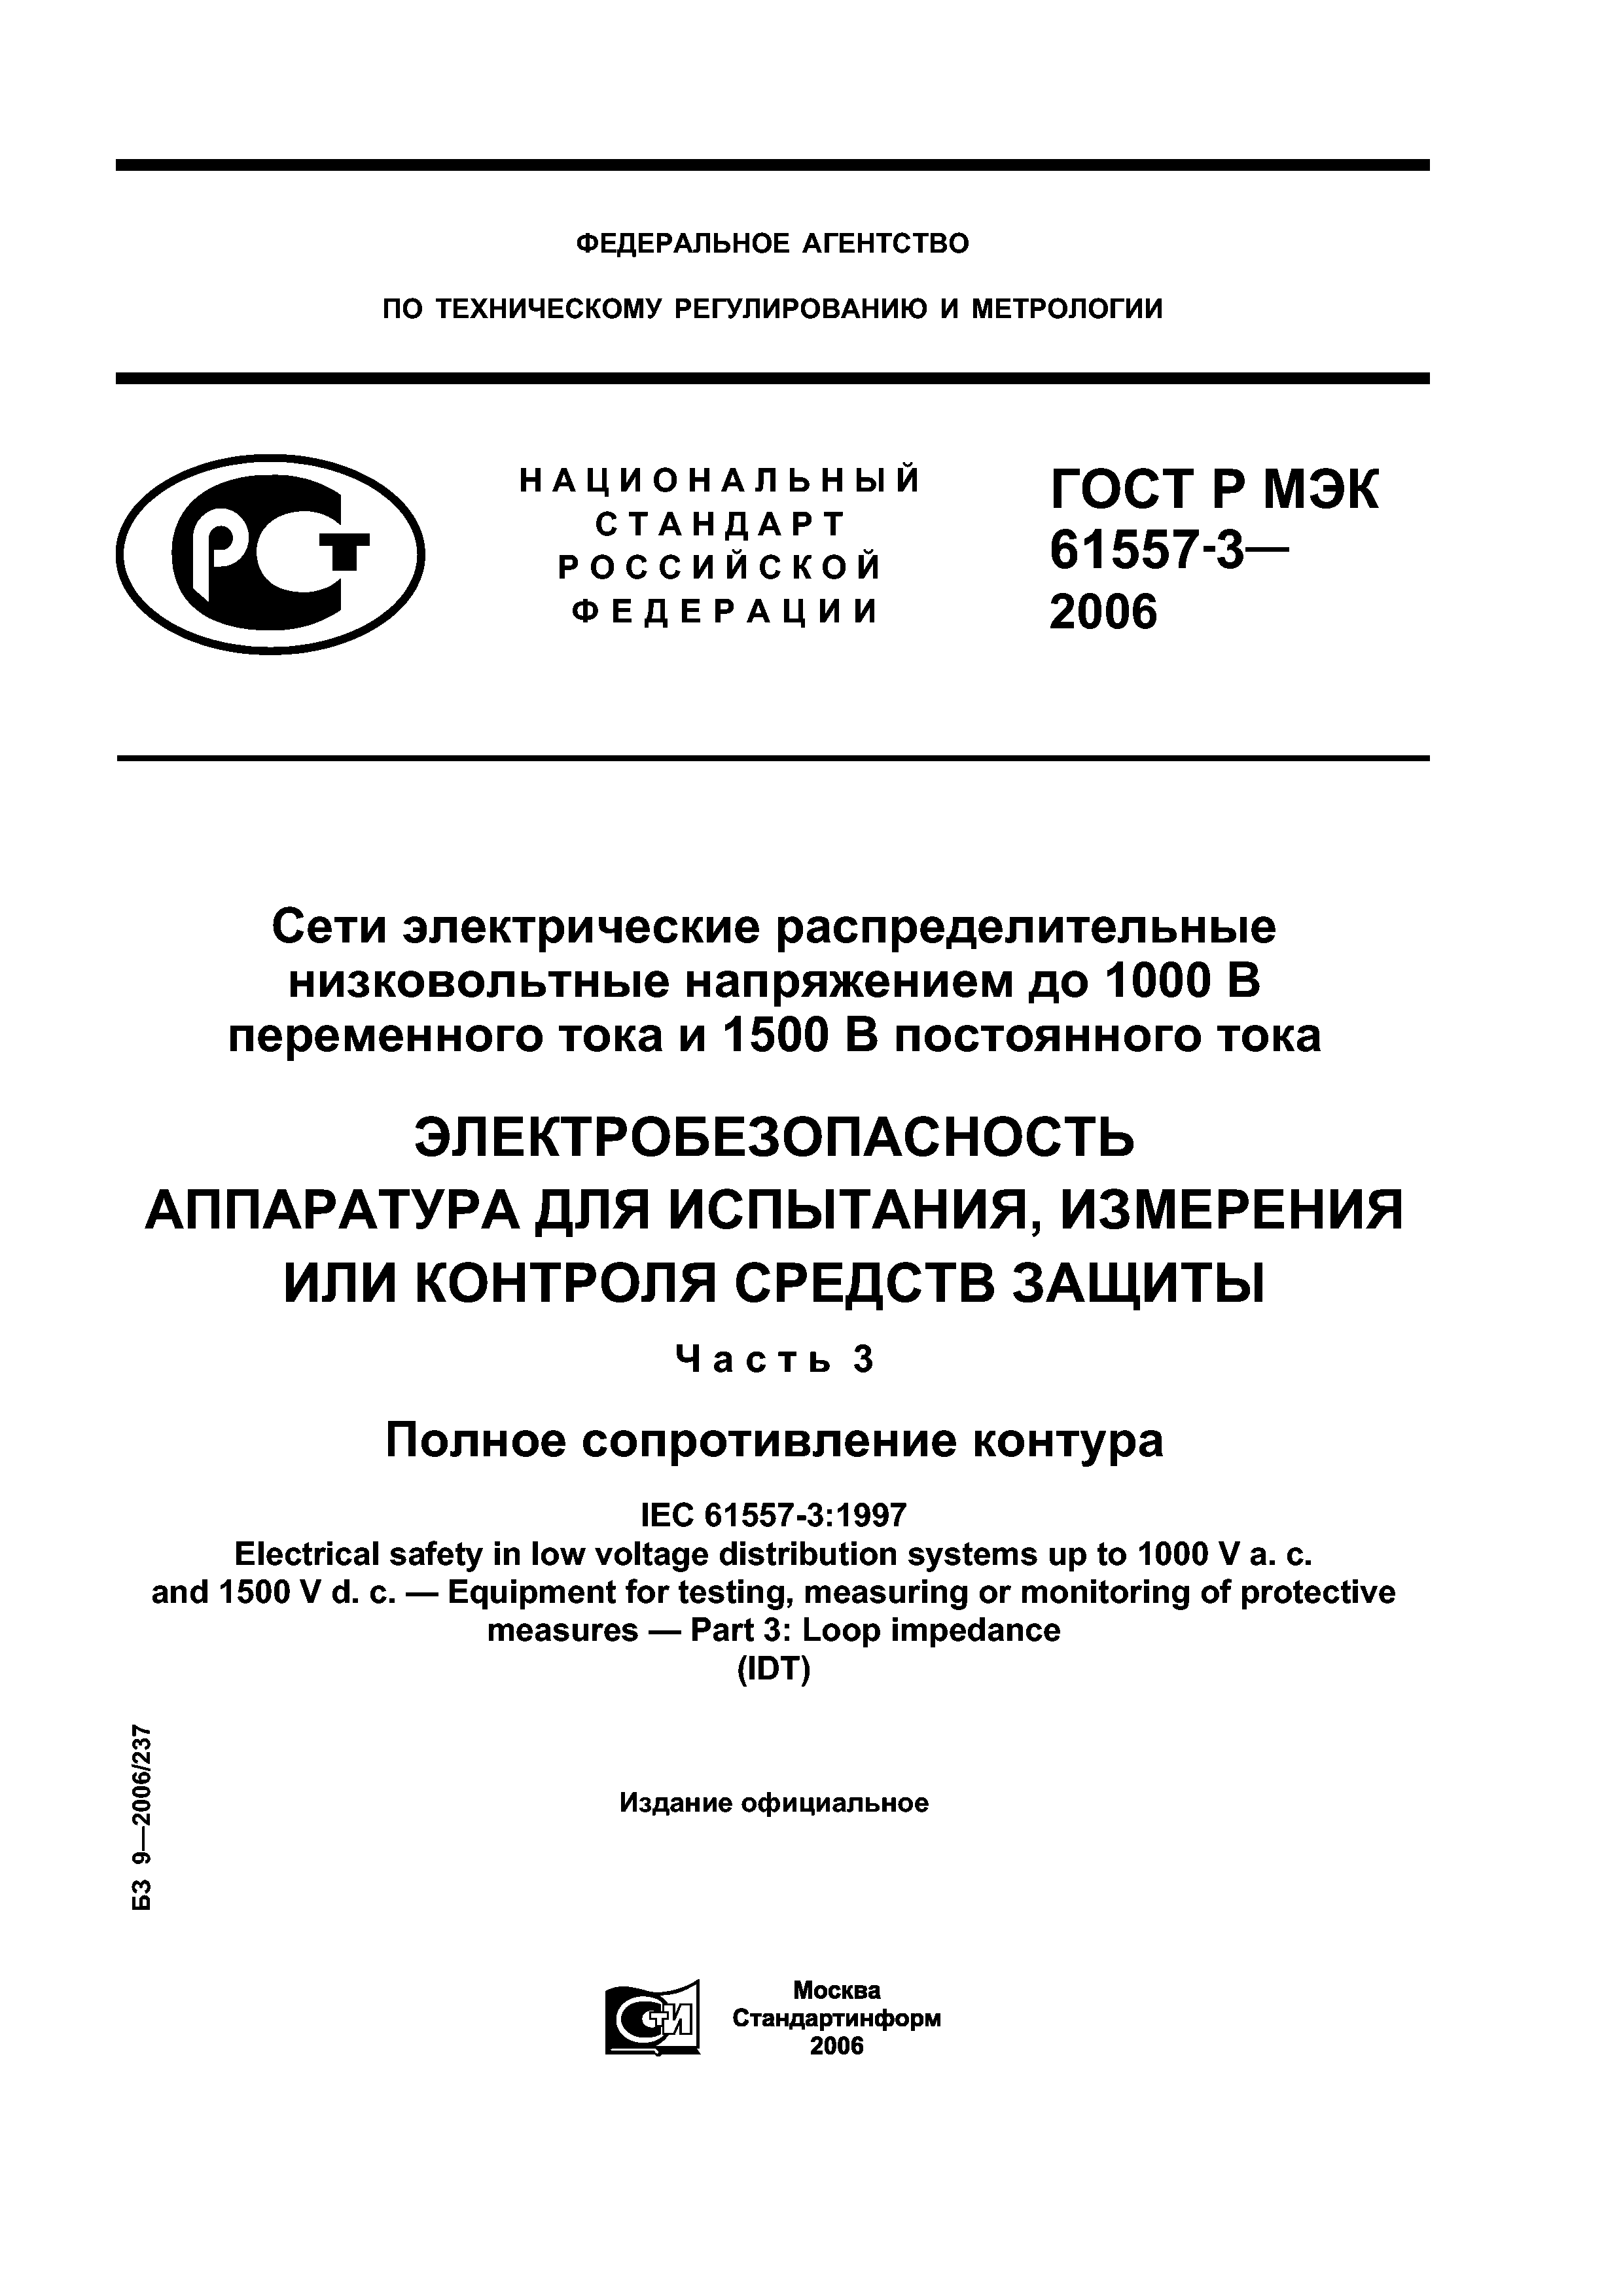 ГОСТ Р МЭК 61557-3-2006